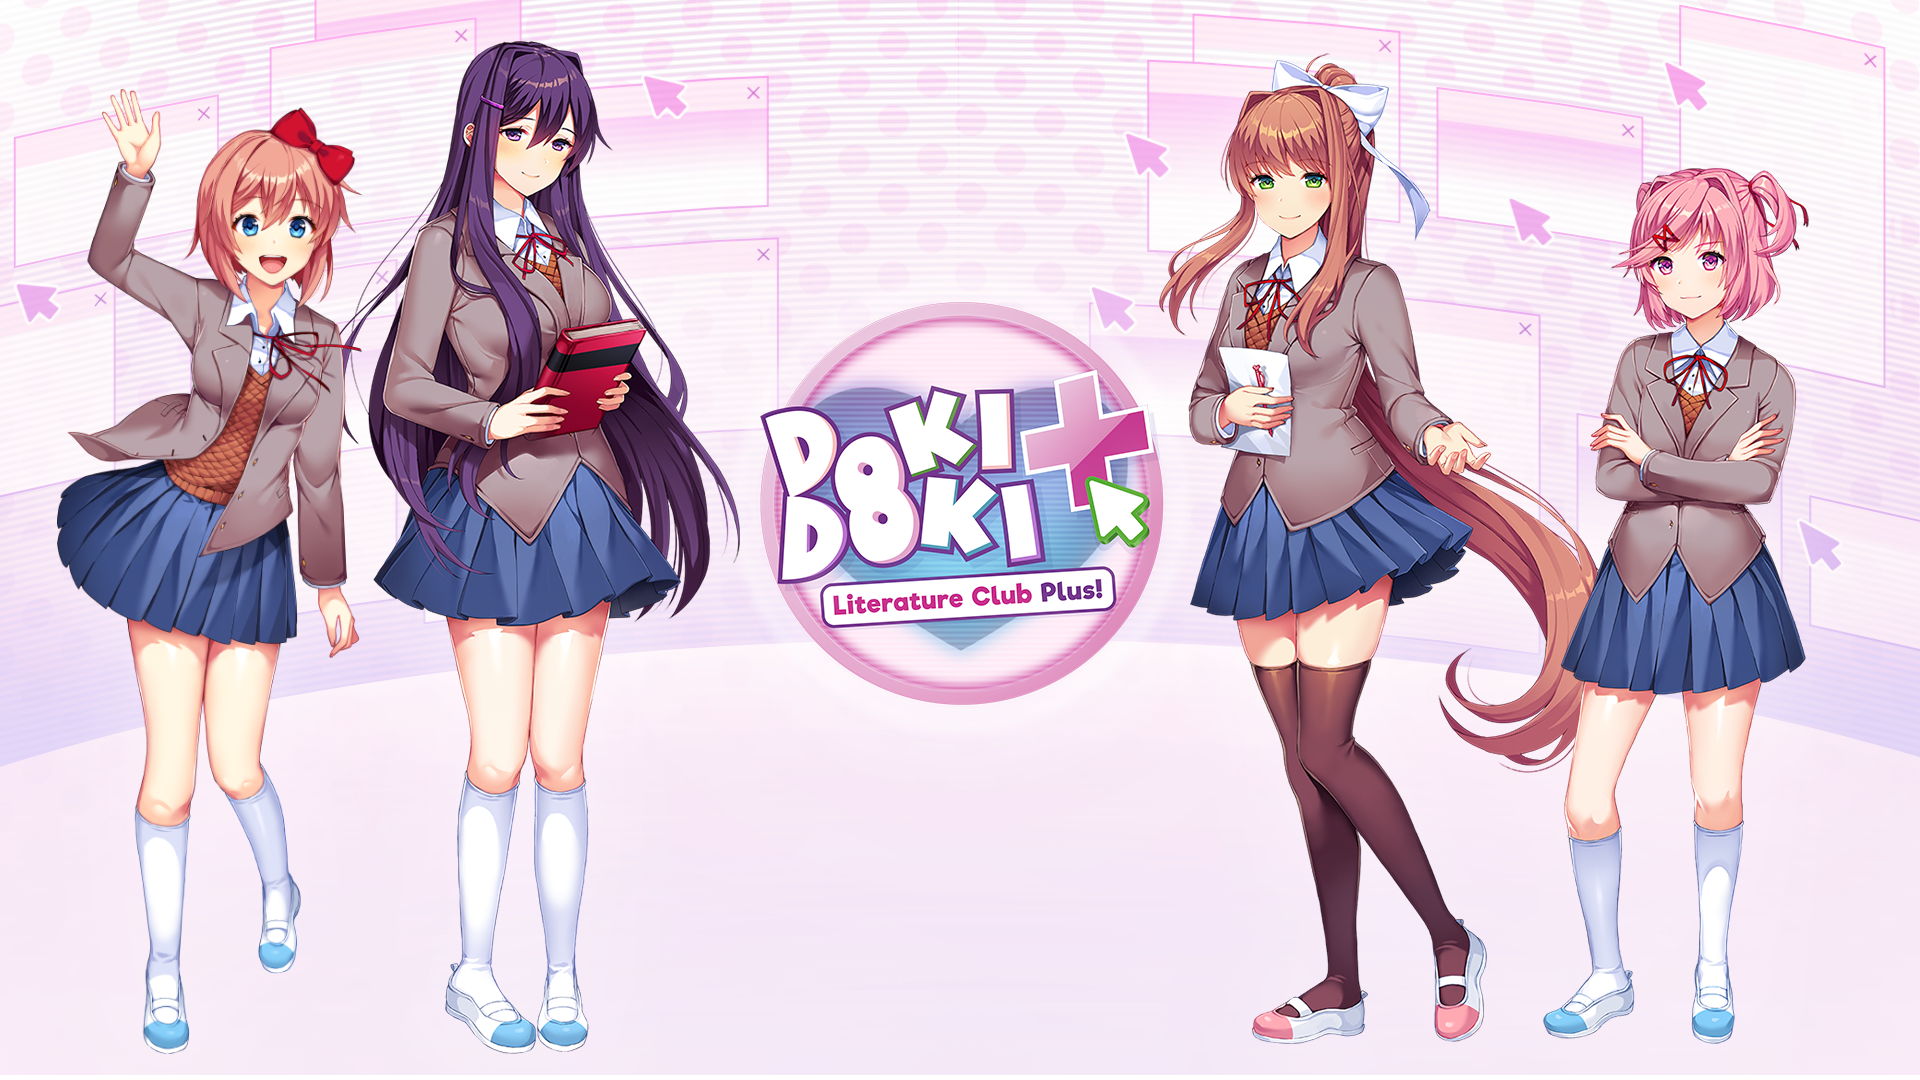 Announcing Doki Doki Literature Club Plus!